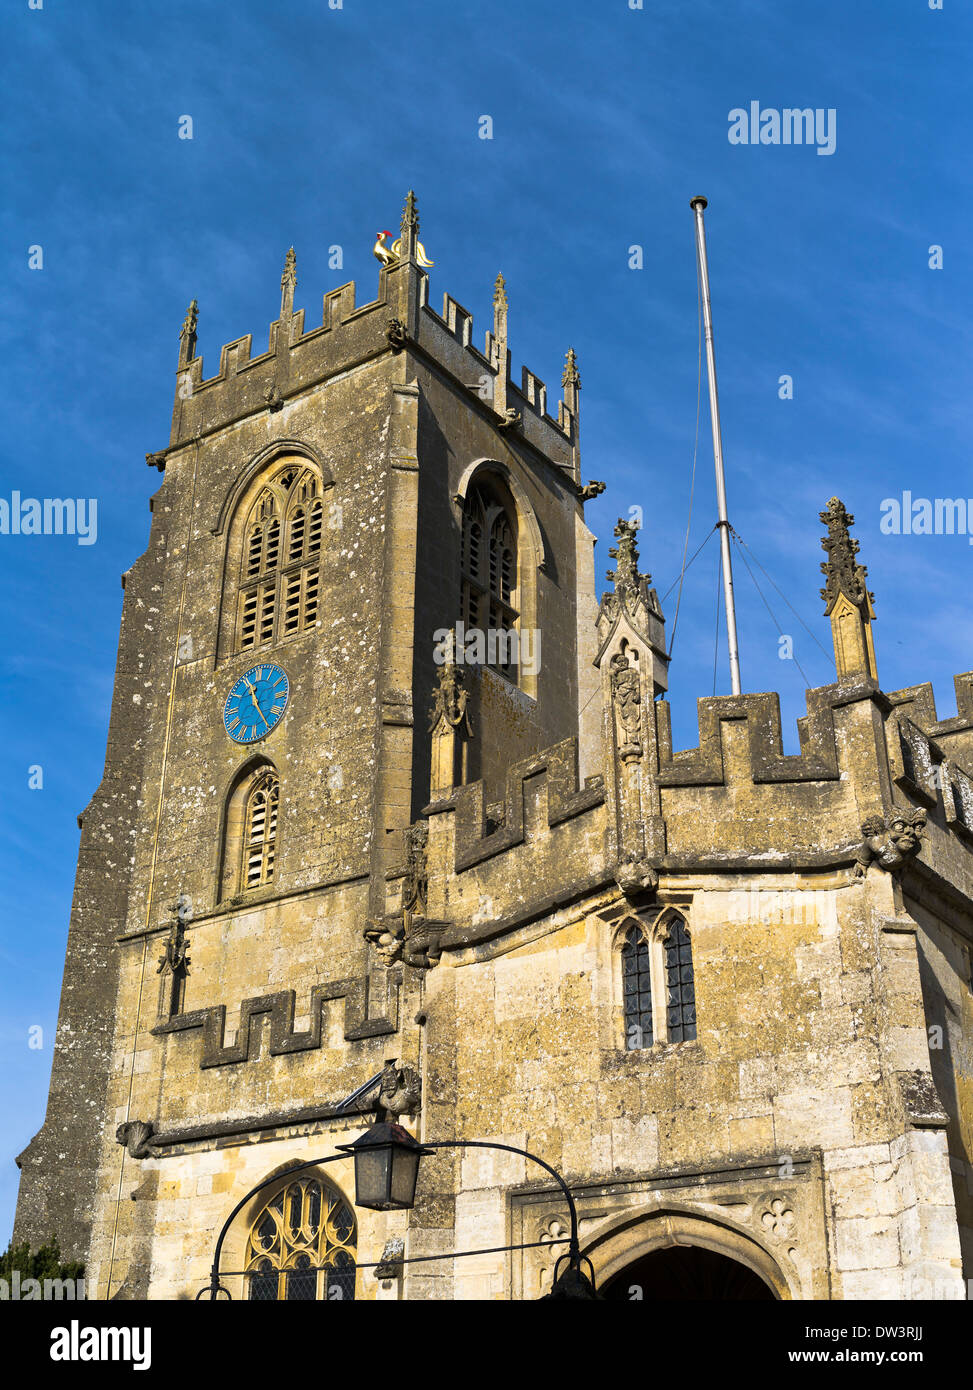 dh St Peters Church cotswolds UK WINCHCOMBE GLOUCESTERSHIRE Cotswolds Englisch Pfarrkirche Uhr Turm Glockenturm mit Wasserspeier england mittelalterlichen Stockfoto